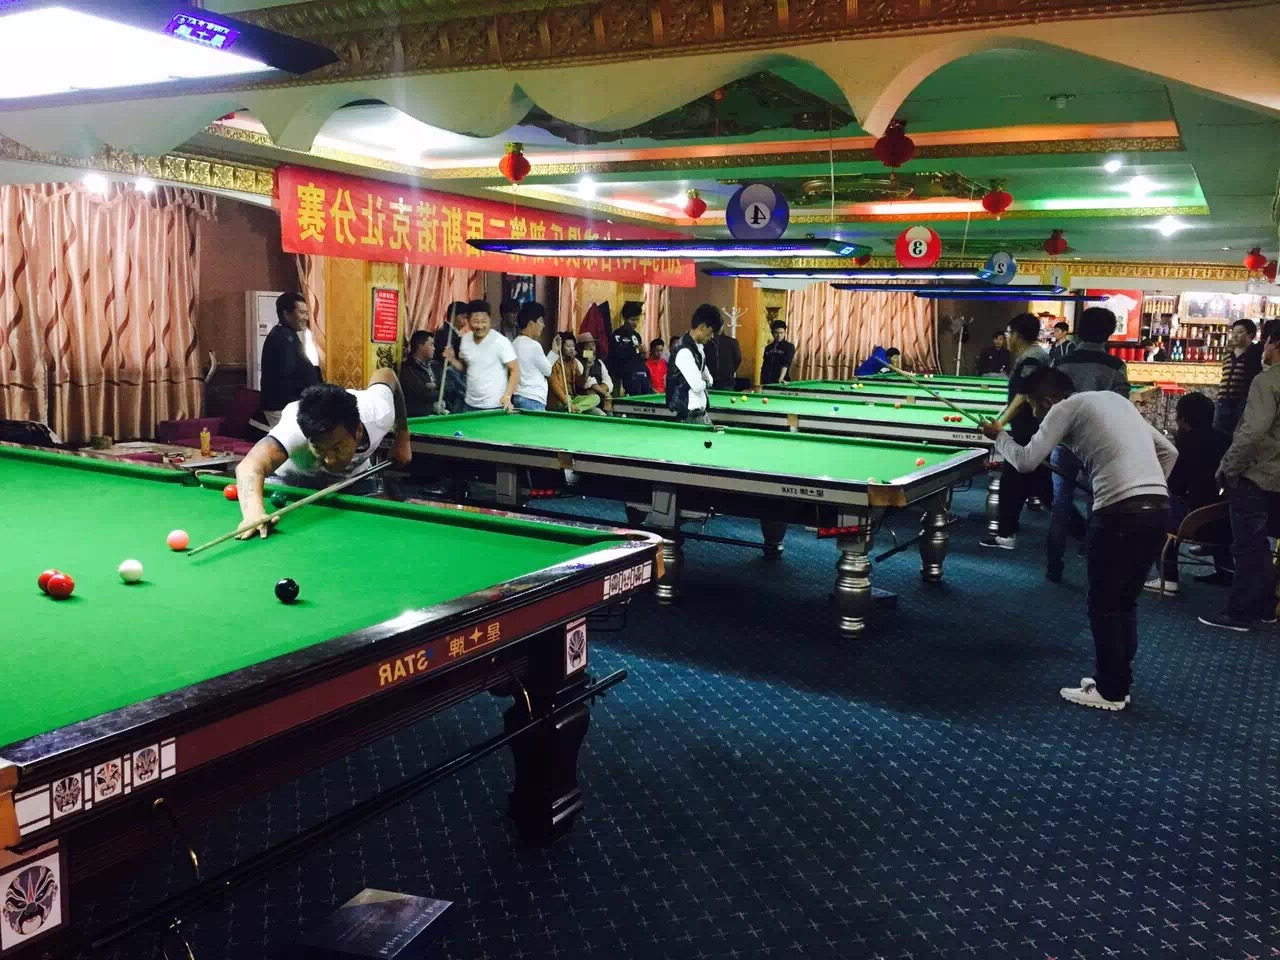 【星联盟】西藏日喀则147台球俱乐部_kok娱乐平台
联盟球房